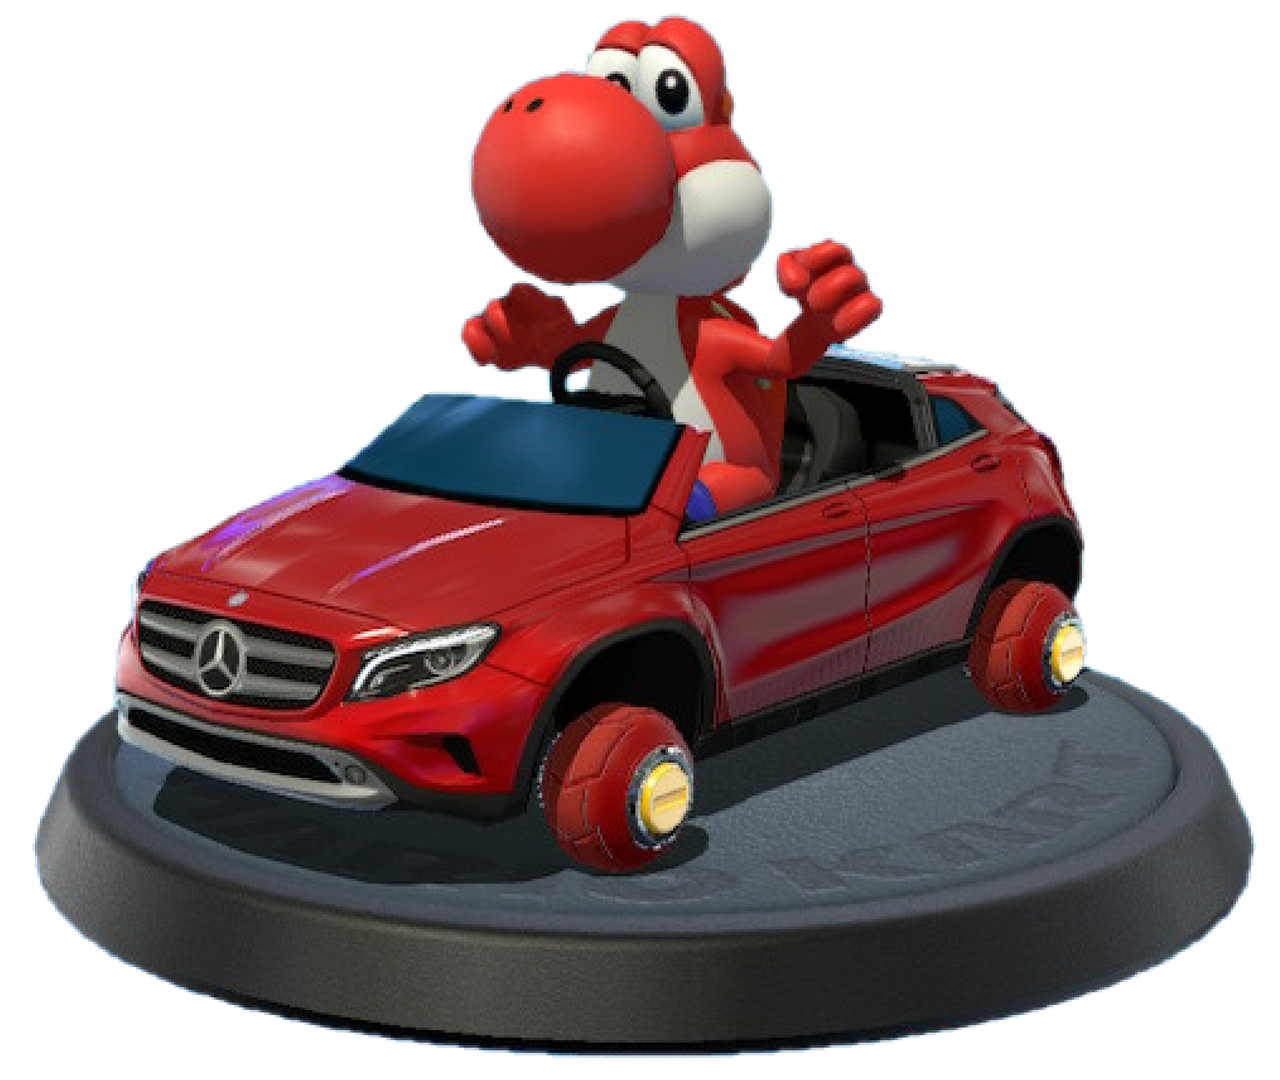 Yoshi - Mario Kart 8 Guide - IGN